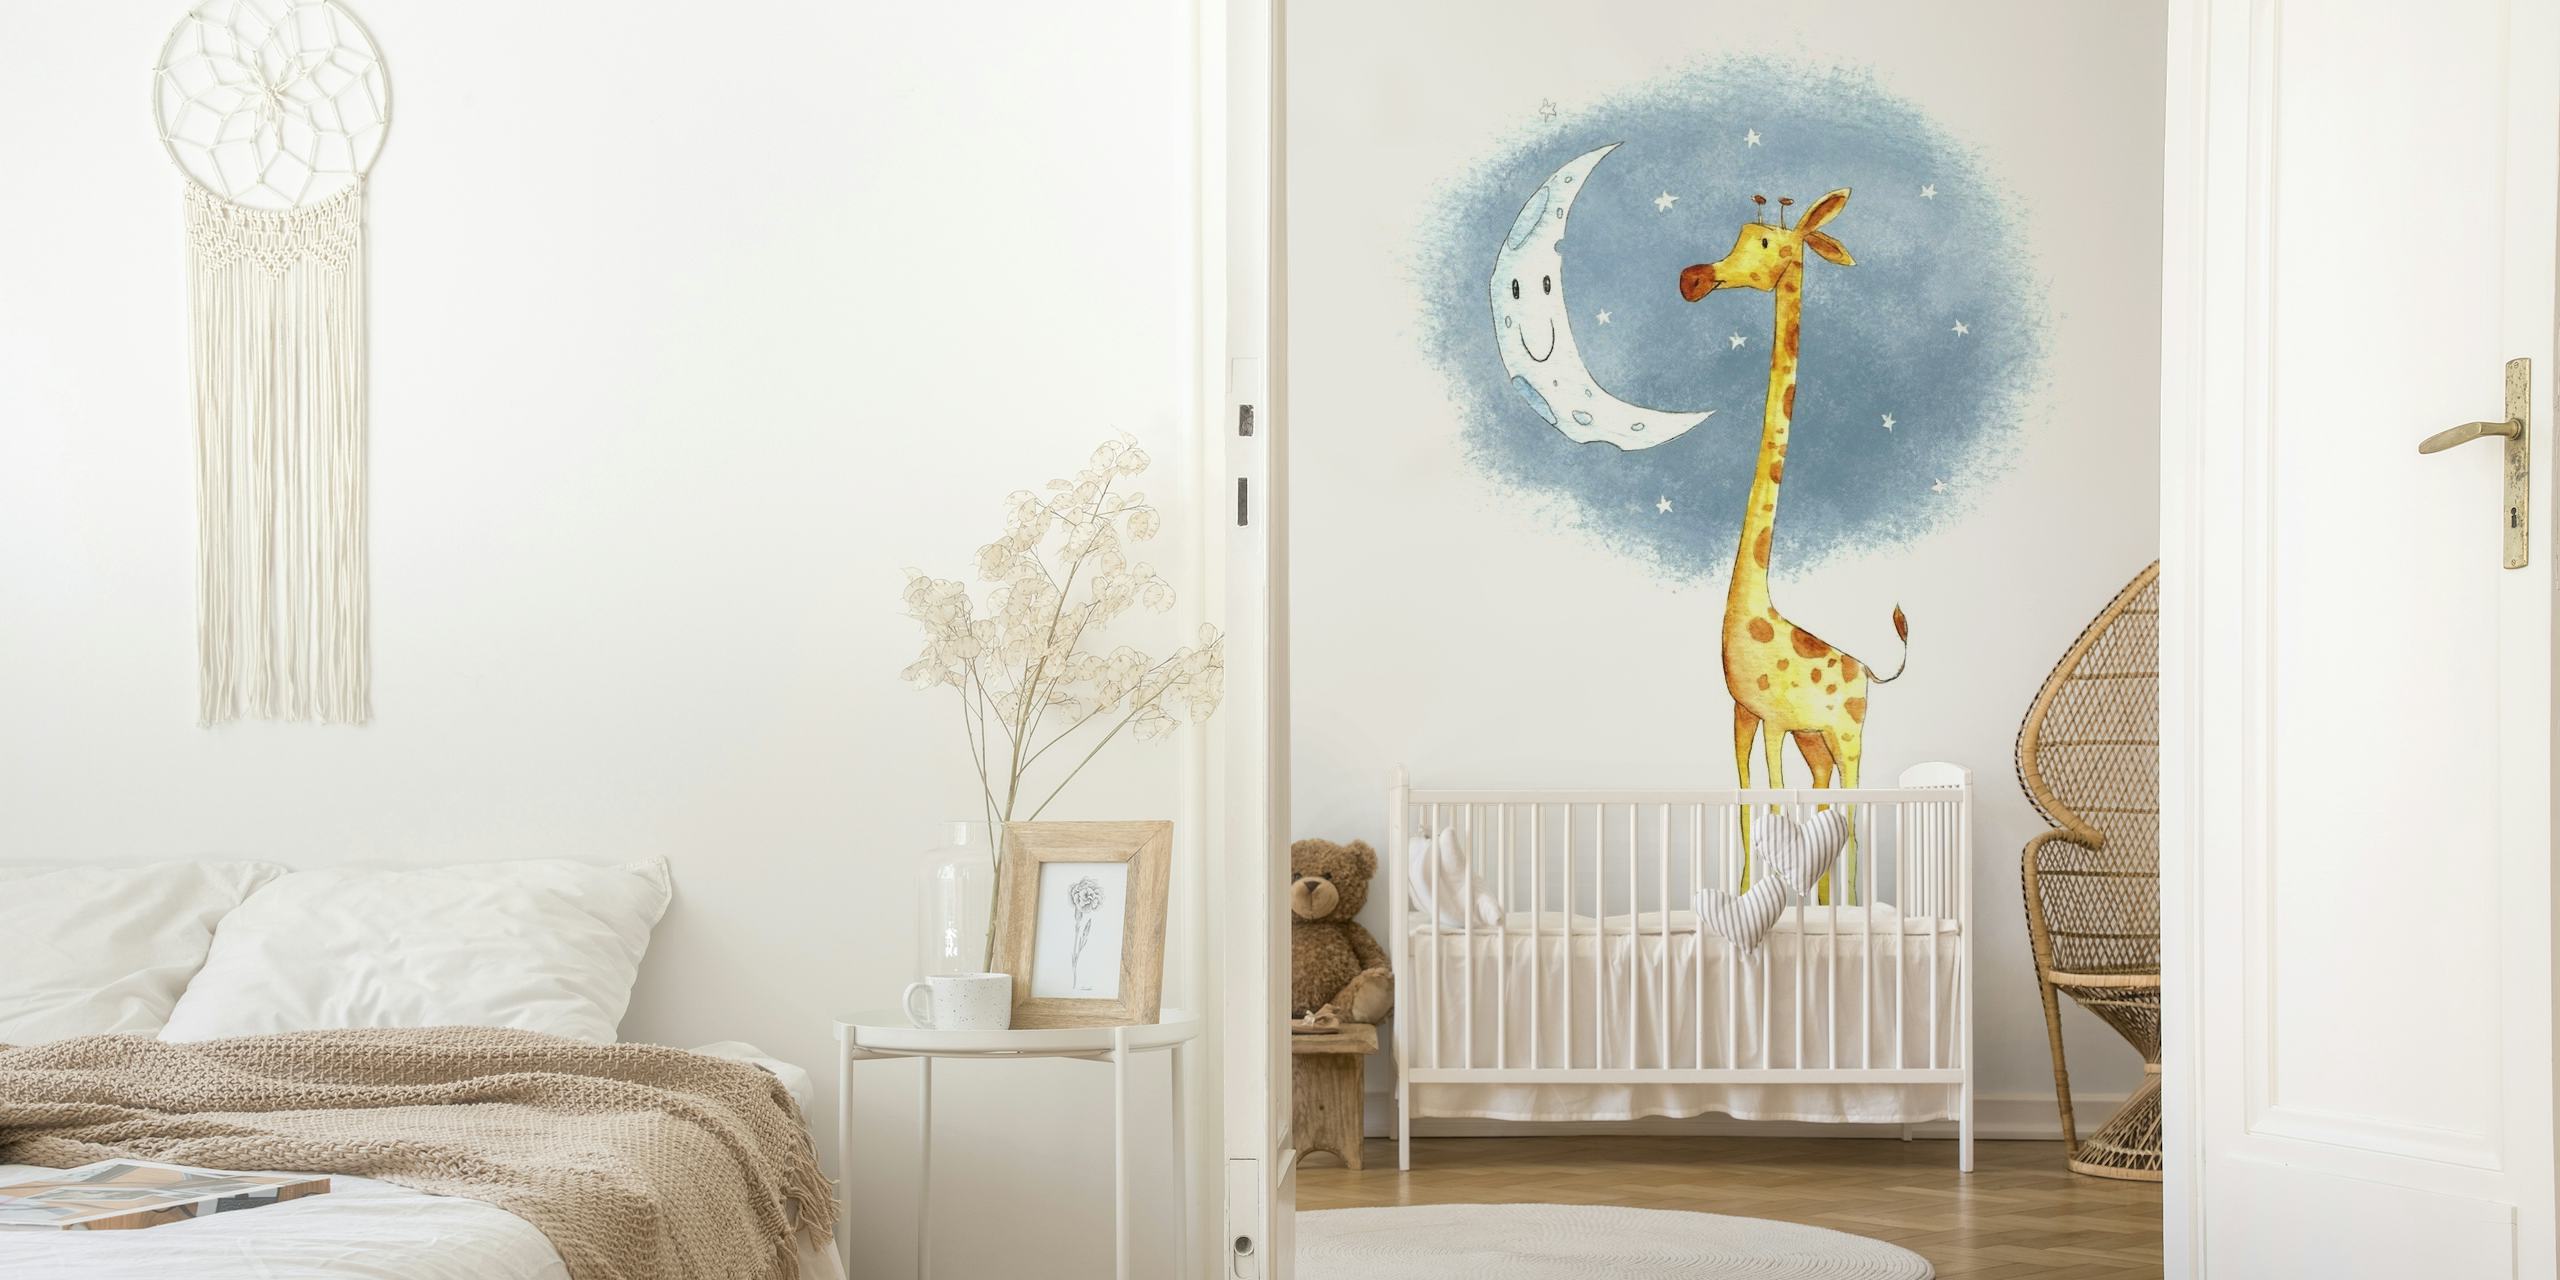 Girafa encantadora e ilustração de lua sorridente em um fundo de noite estrelada em aquarela para um mural de parede